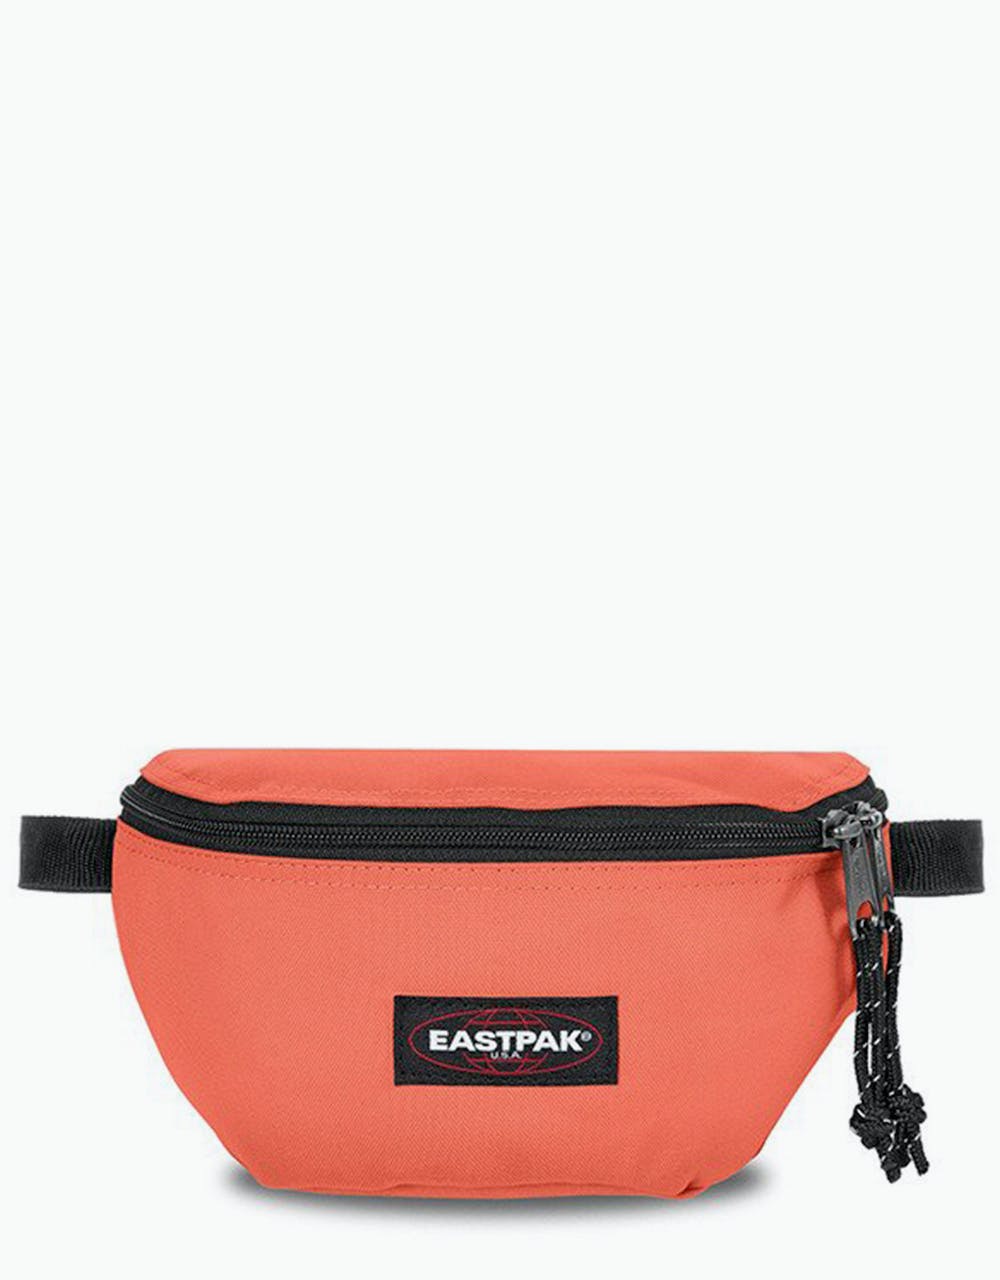 Eastpak Springer Cross Body Bag - Lobster Orange